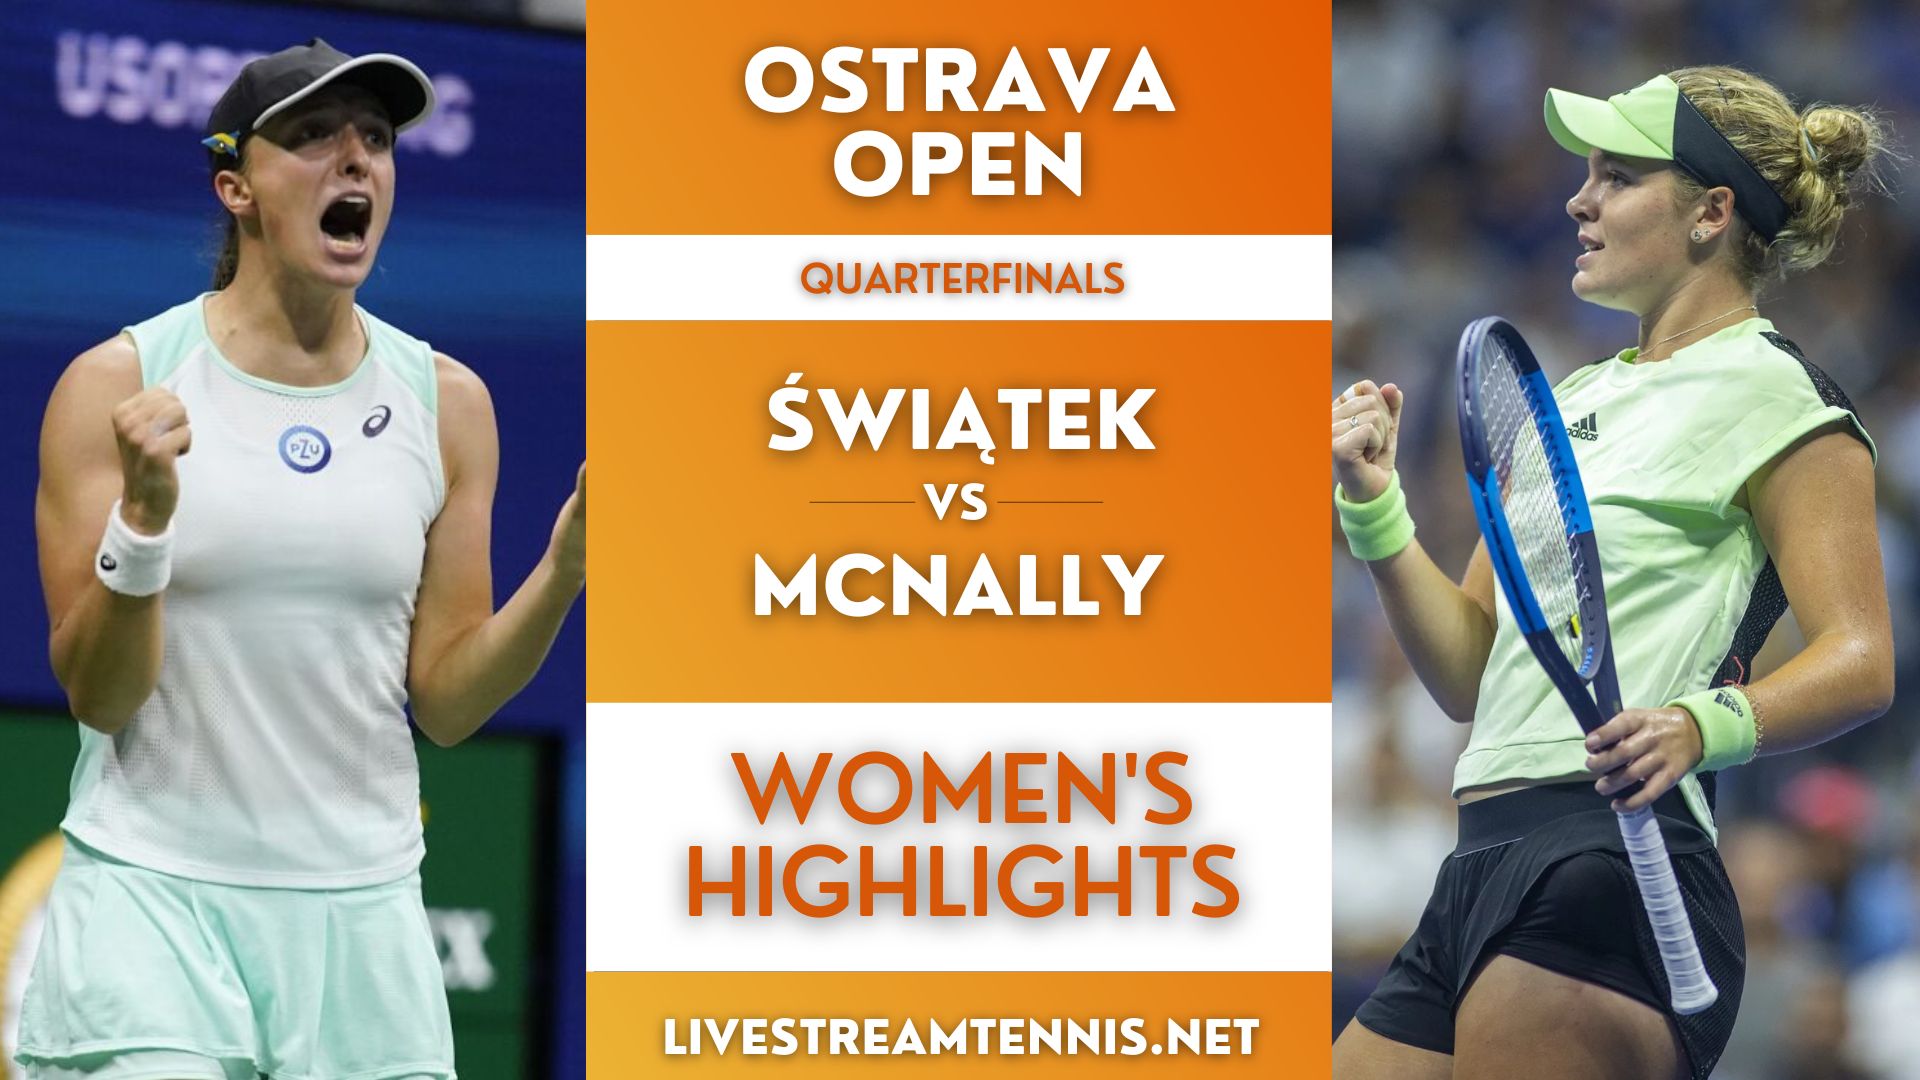 Ostrava Open WTA Quarterfinal 2 Highlights 2022